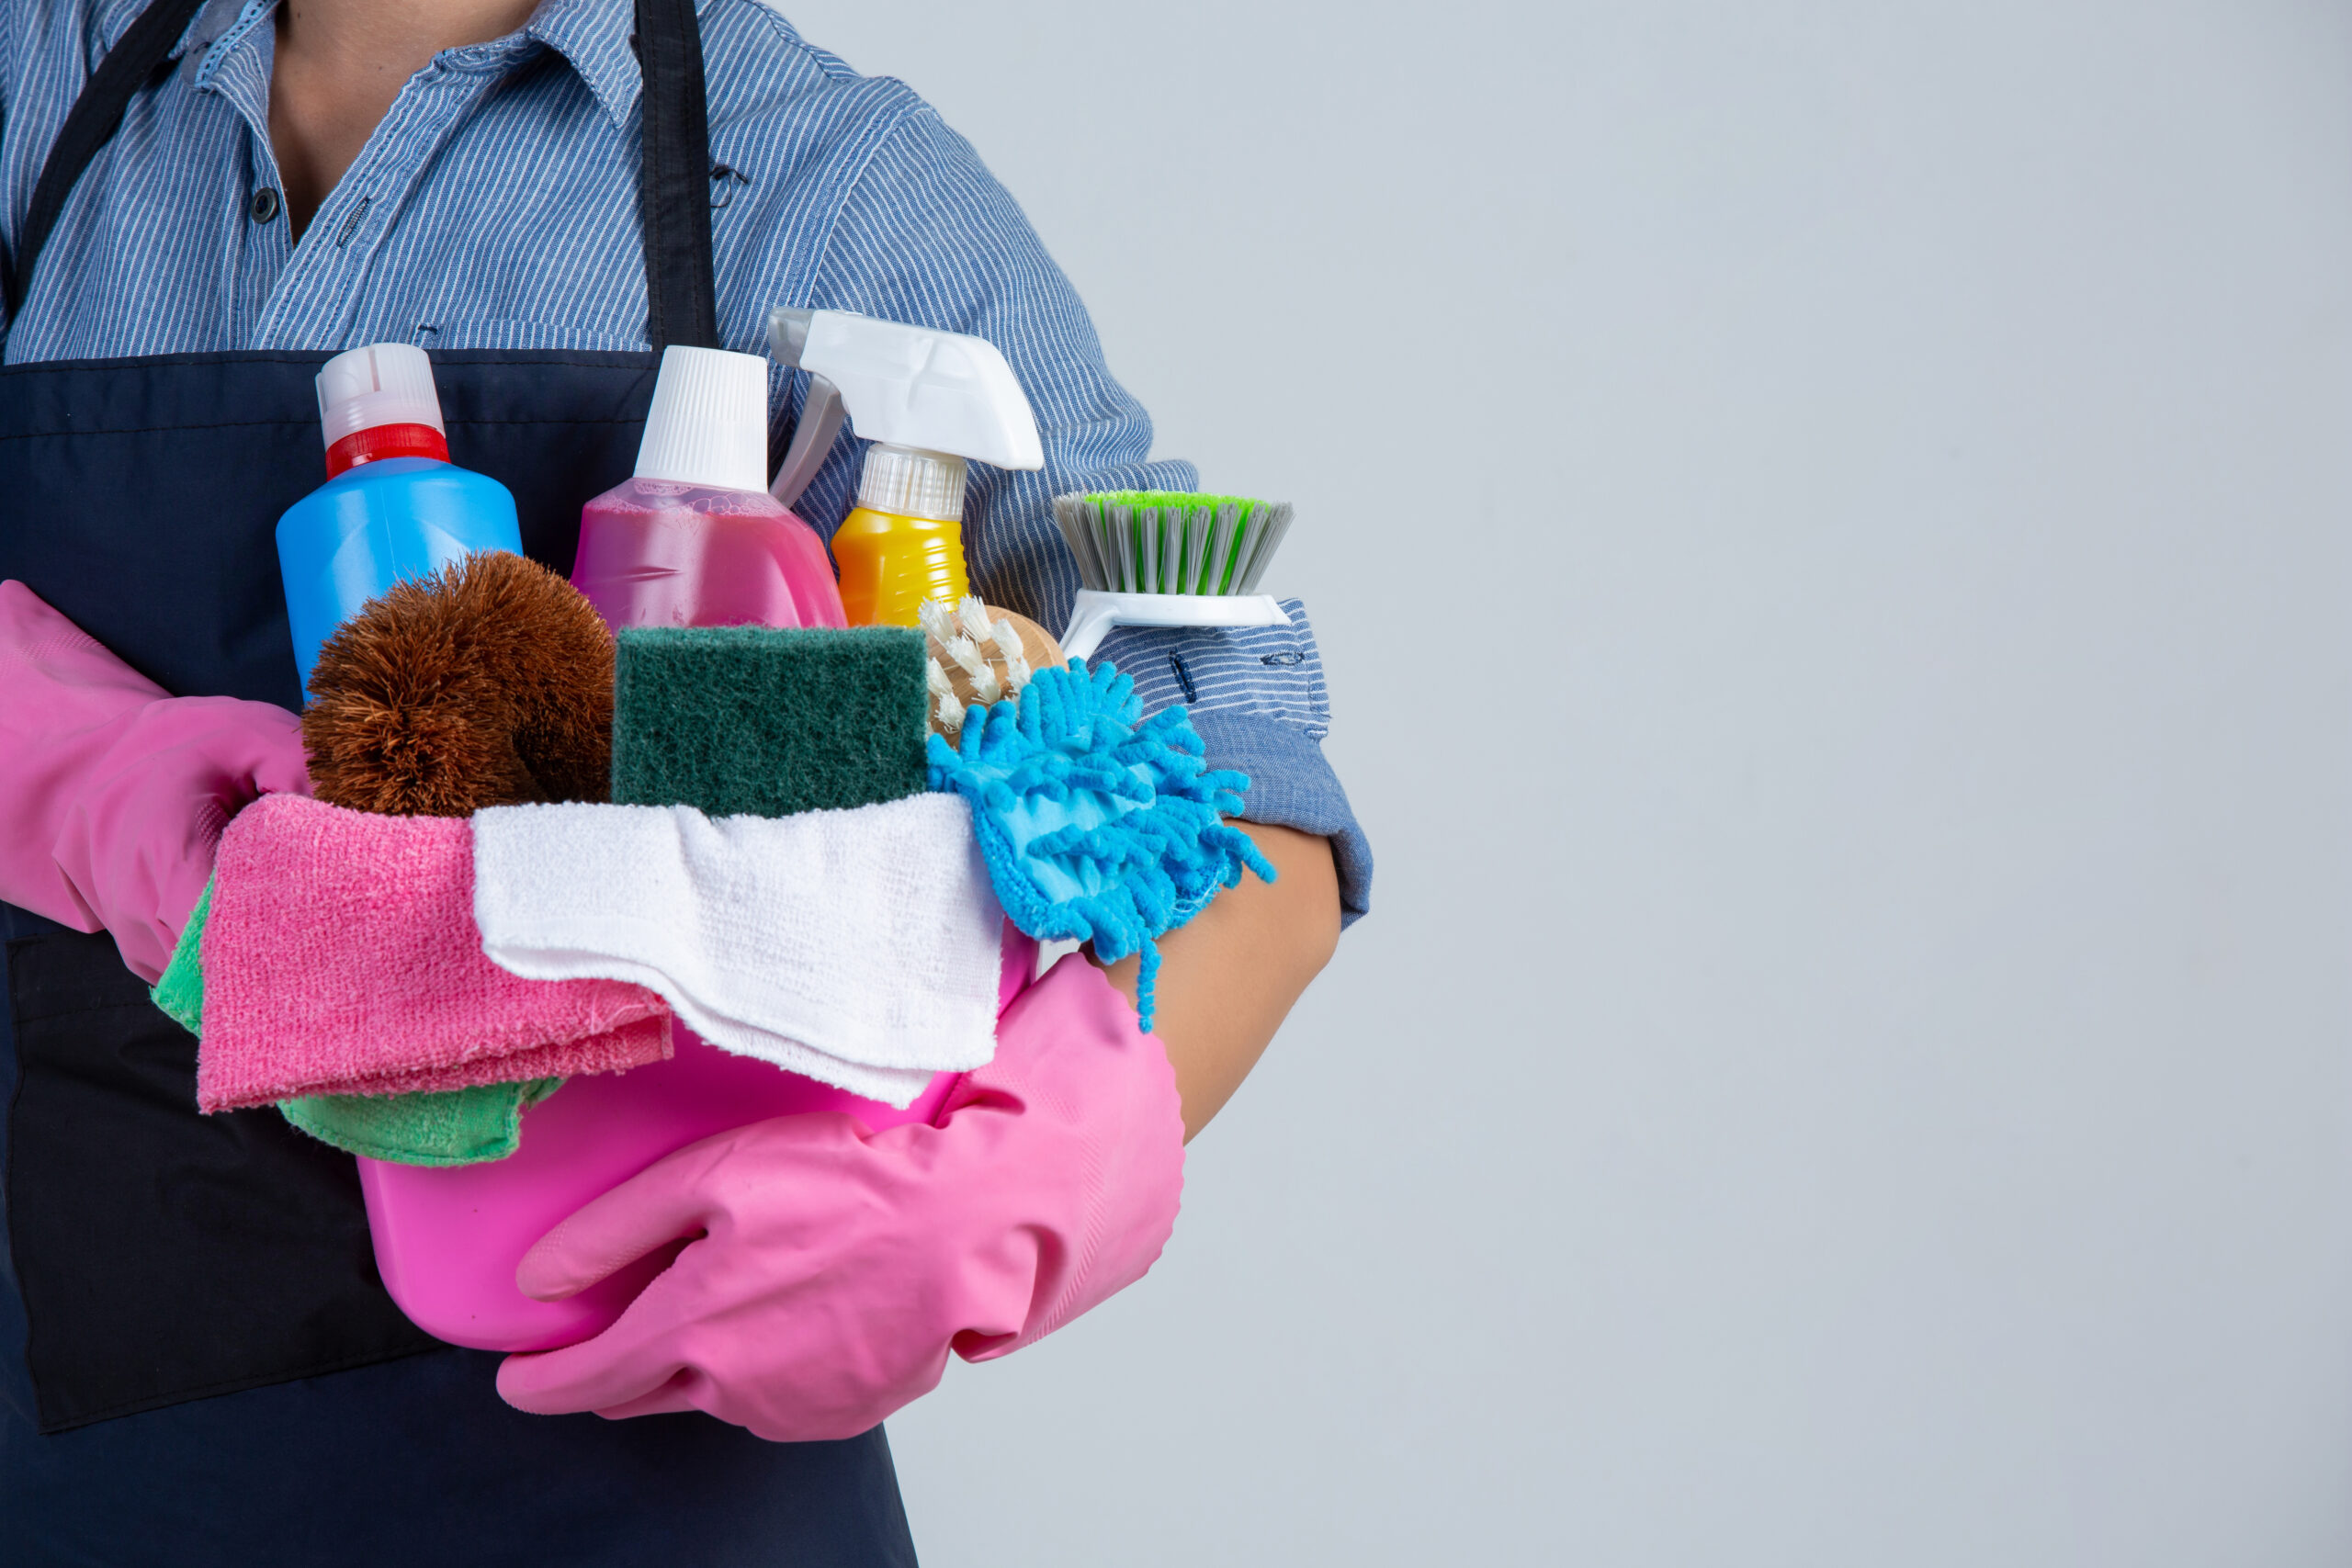 Confira no conteúdo a seguir 5 produtos de limpeza essenciais para o dia a dia para manter sua casa limpa e higienizada!